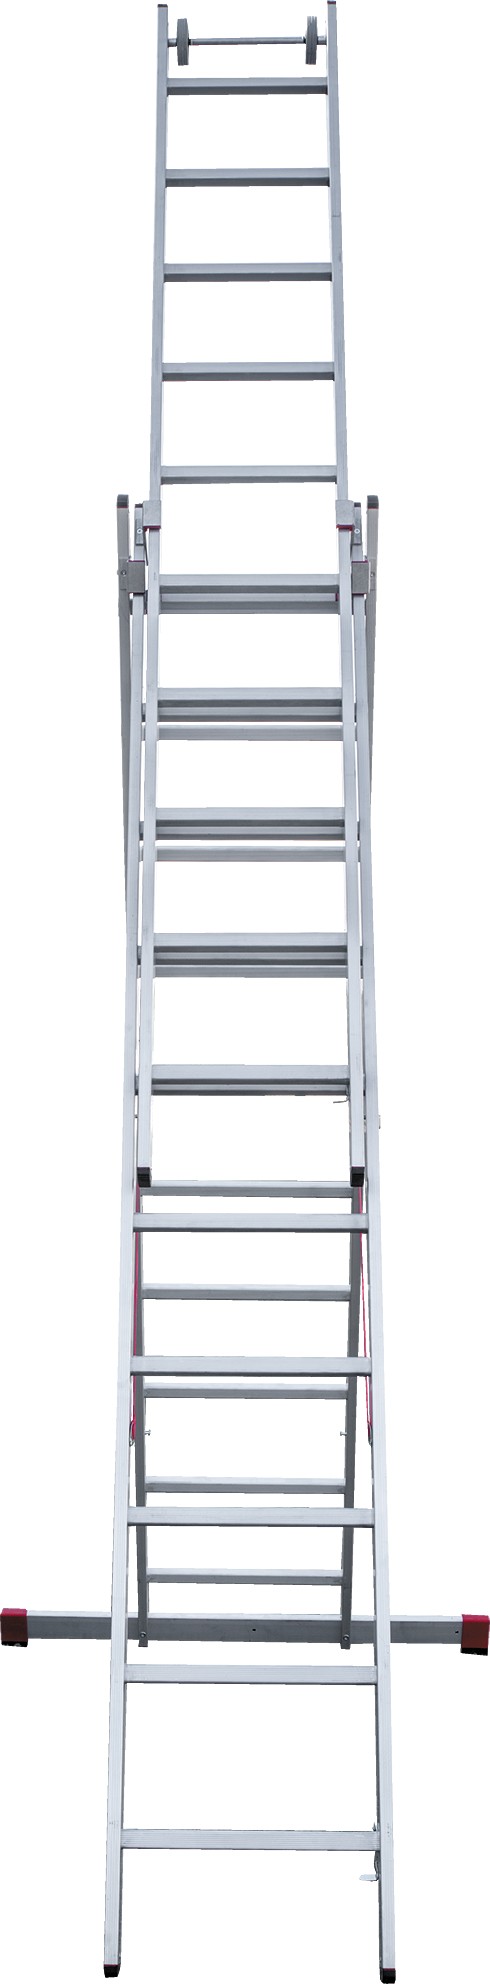 Индустриальная алюминиевая трехсекционная лестница NV5230 